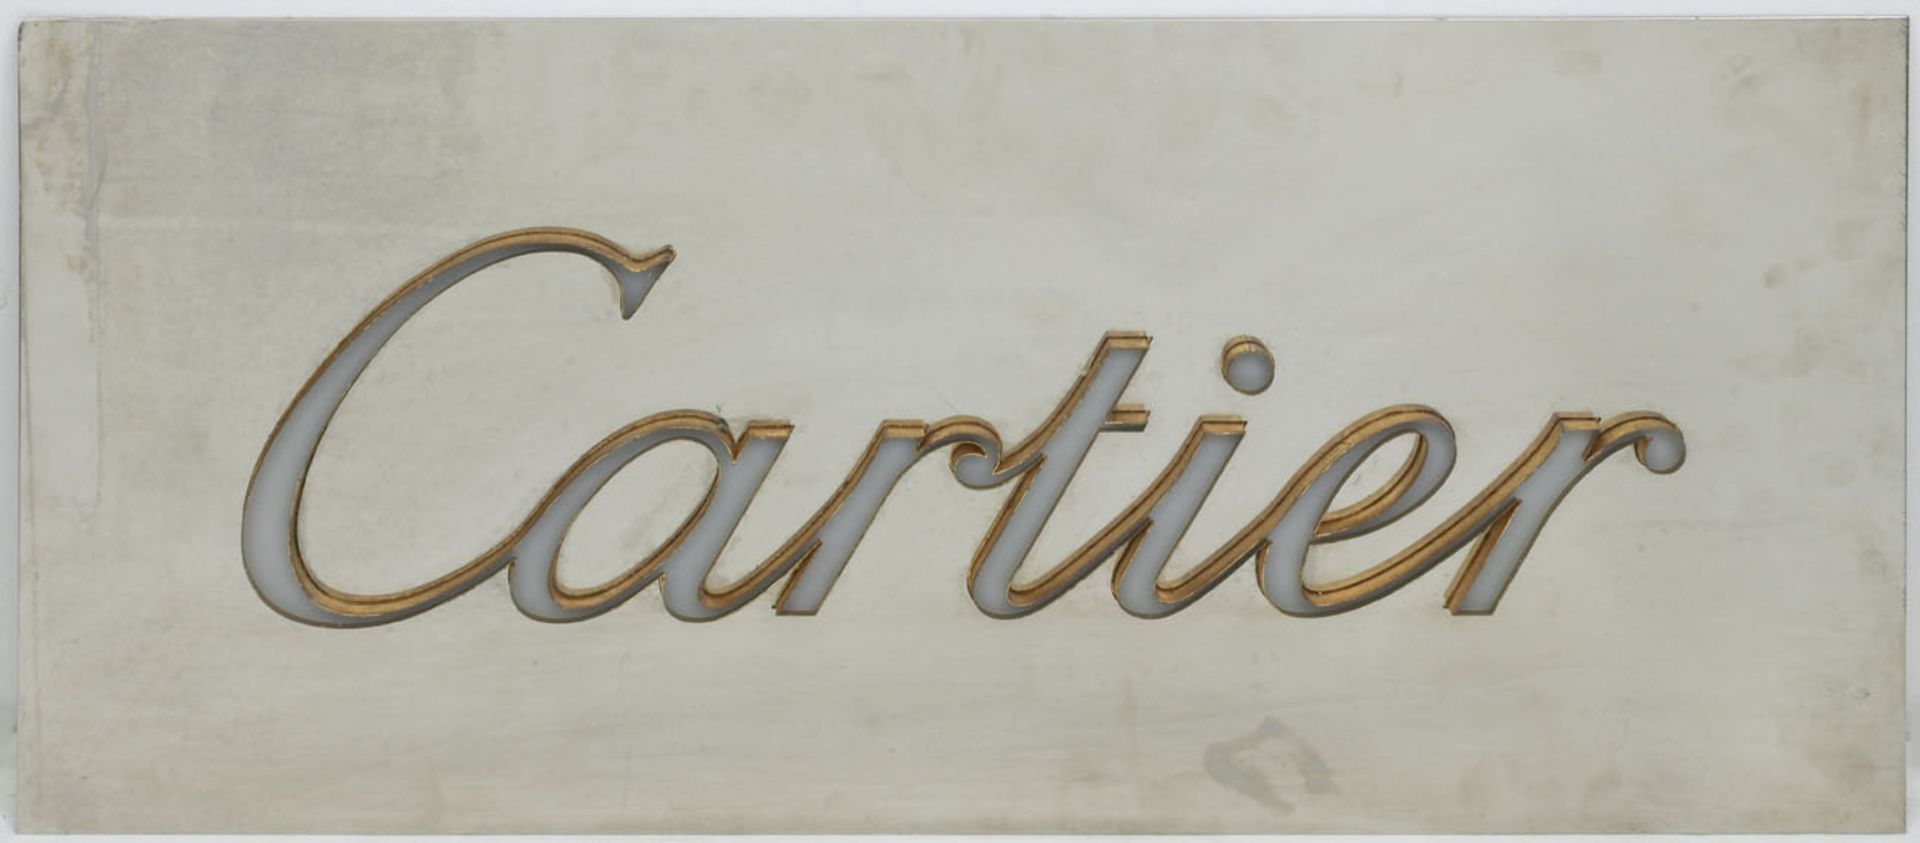 Großes Werbeschild "Catier", aus einem Juweliernachlaß, verchromtes Blech mit erhabenerSchrift mit